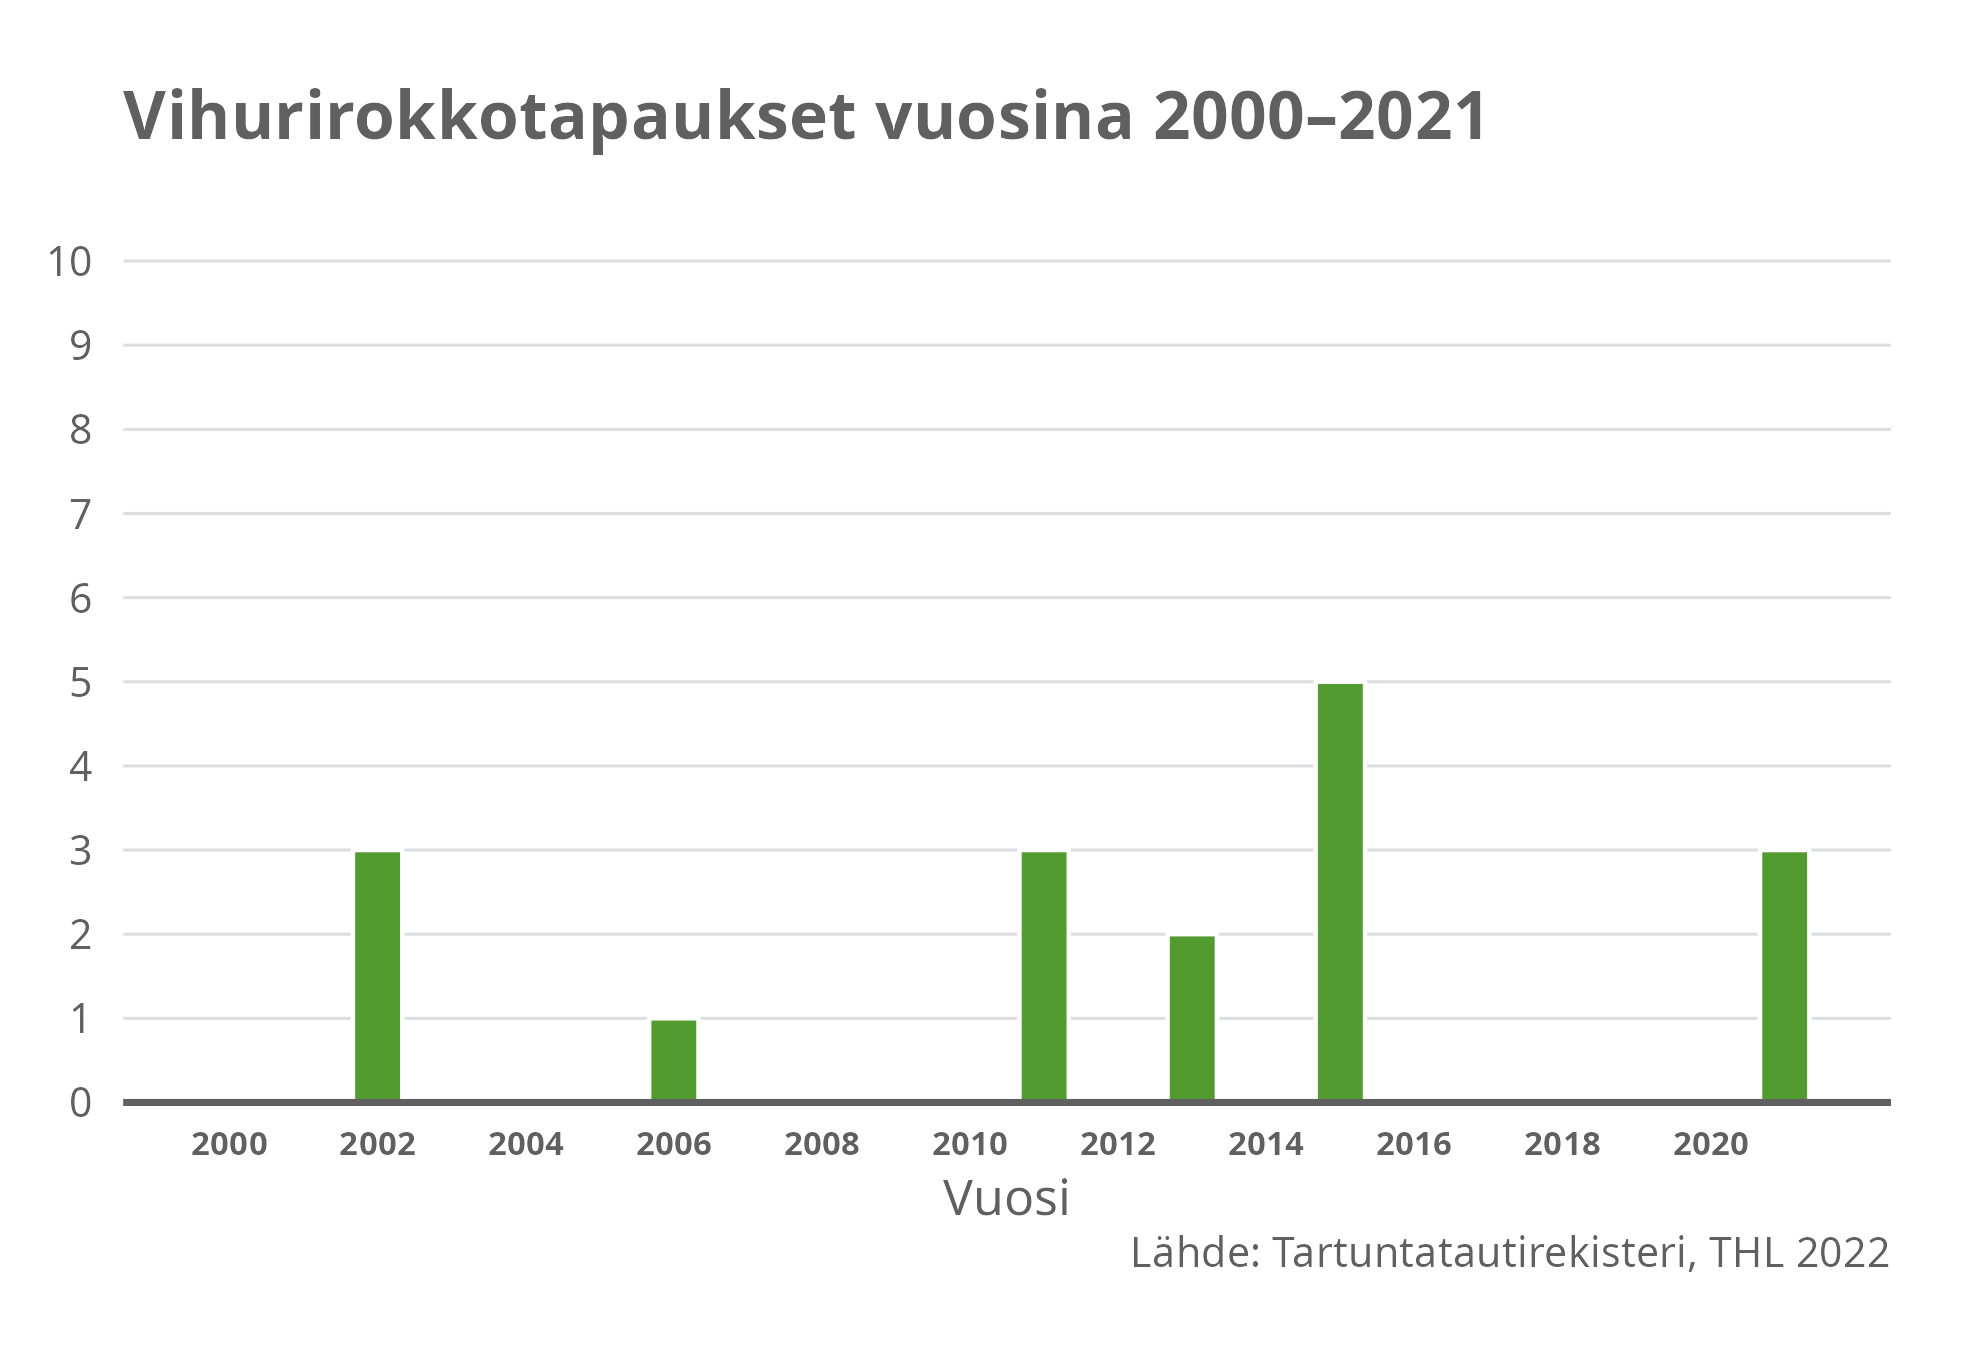 Vihurirokkotapukset vuosina 2000-2021.